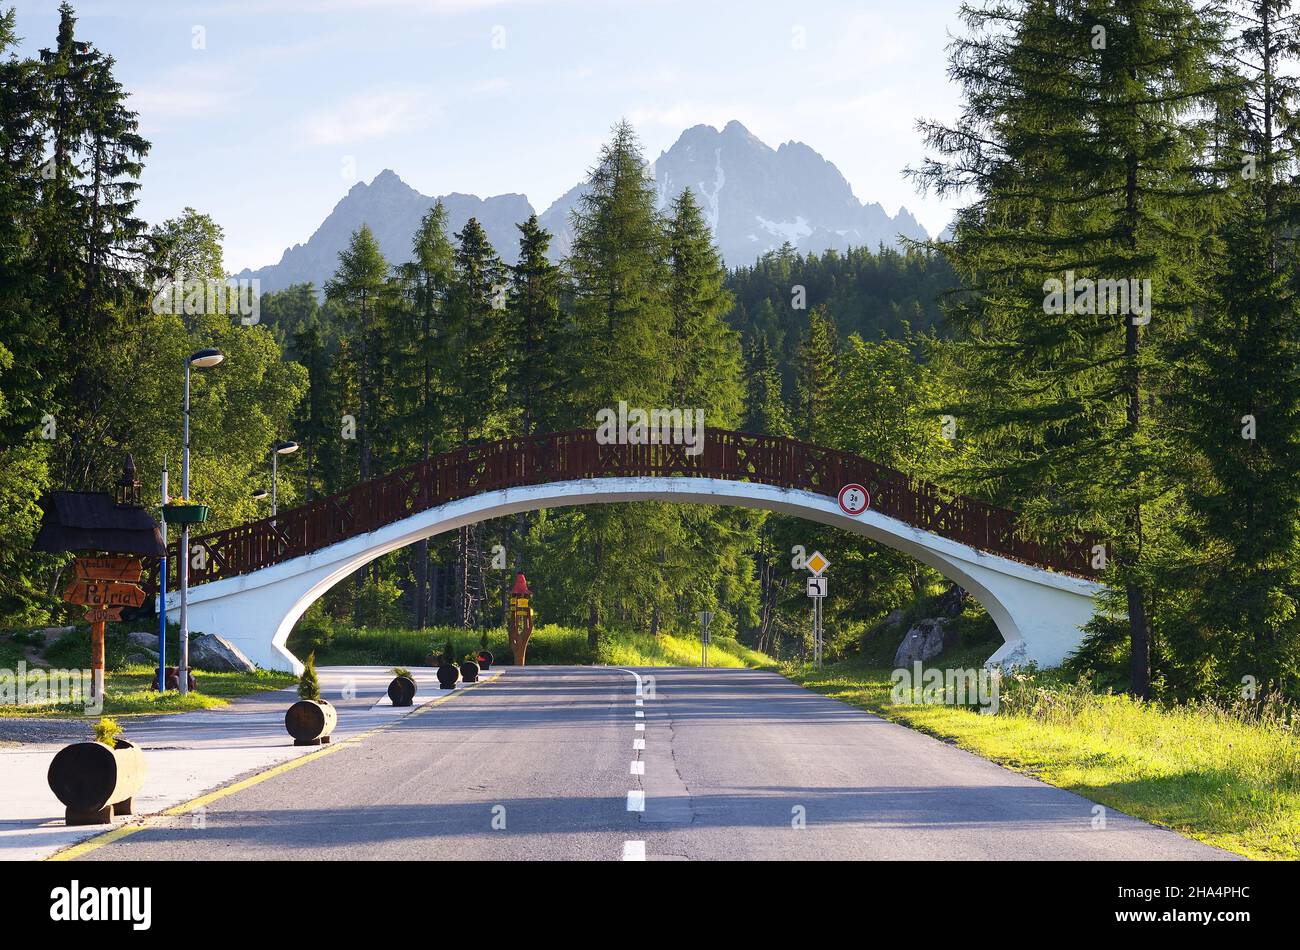 SLOVACCHIA, SHTRBSVE PLESO - GIUGNO 29: Paesaggio estivo con strada in una località di montagna e un ponte pedonale. Tatra, Slovacchia Foto Stock